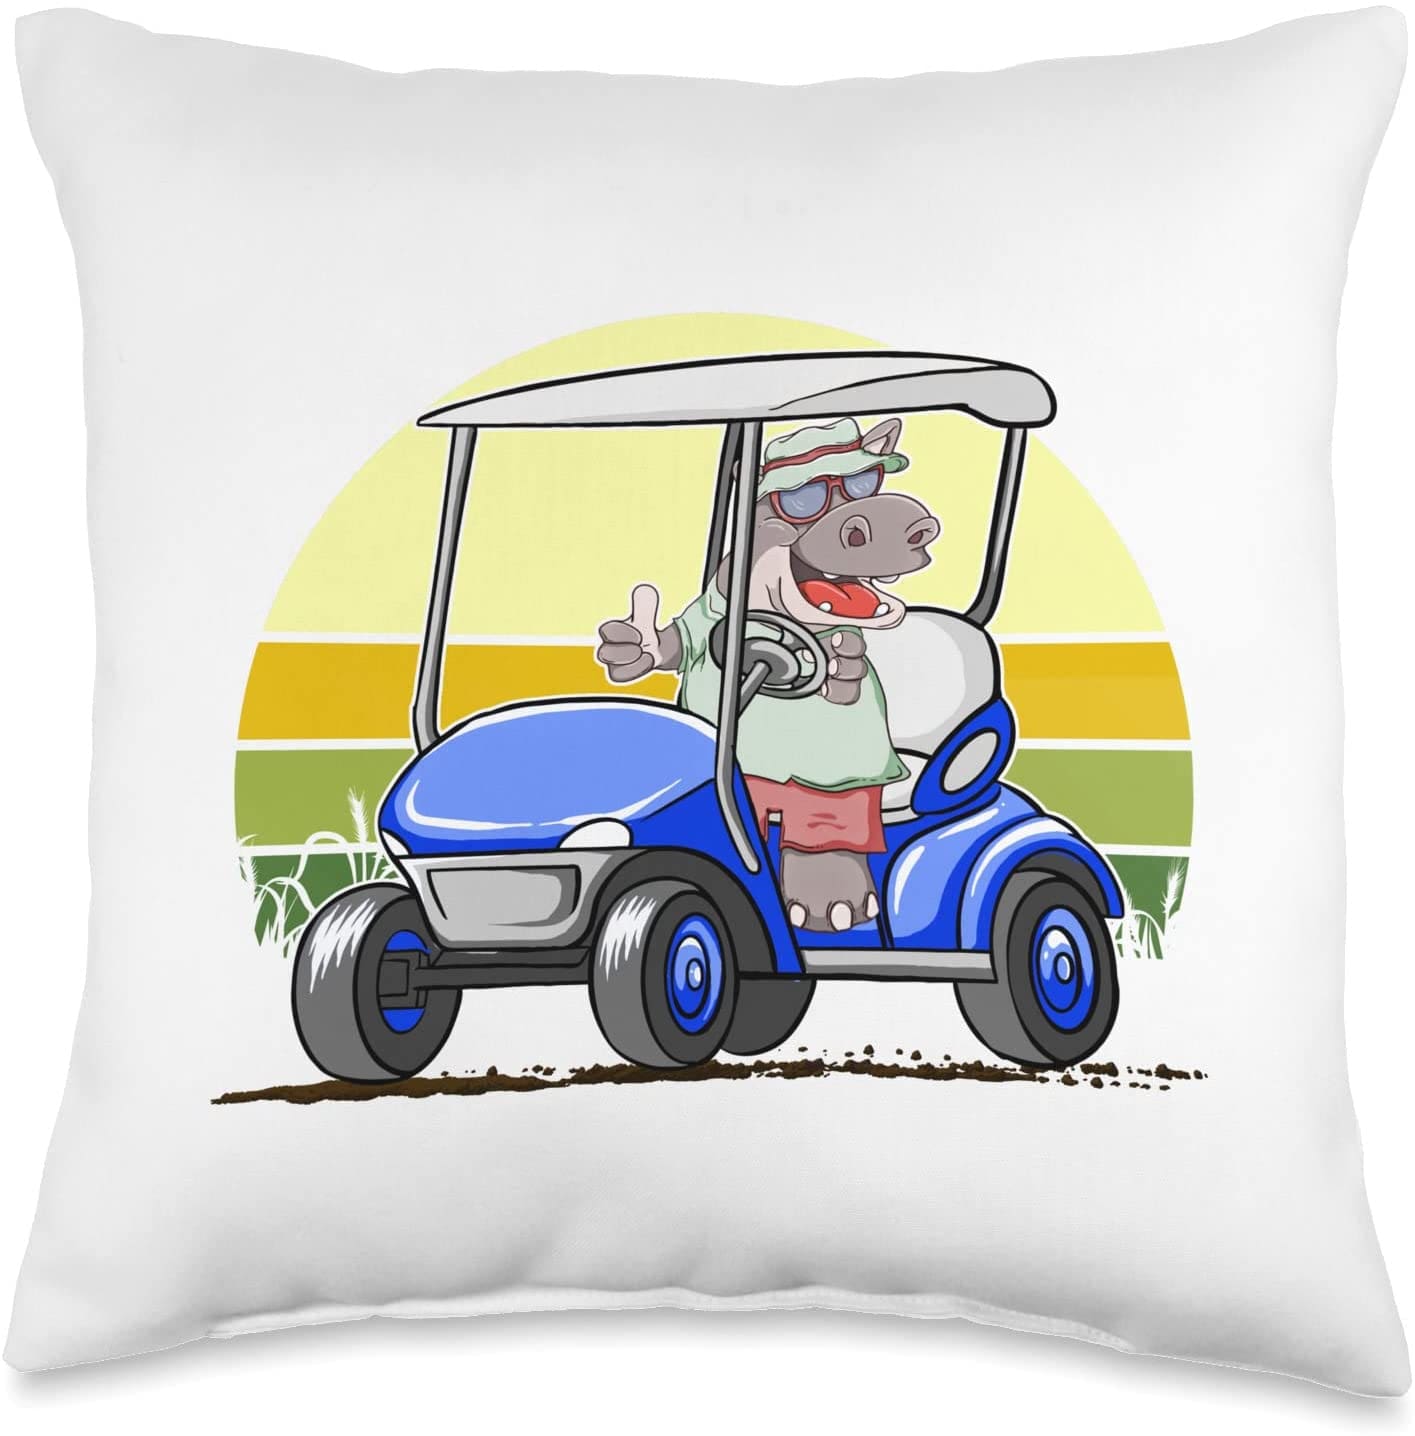 Funny golf cart throw pillow.